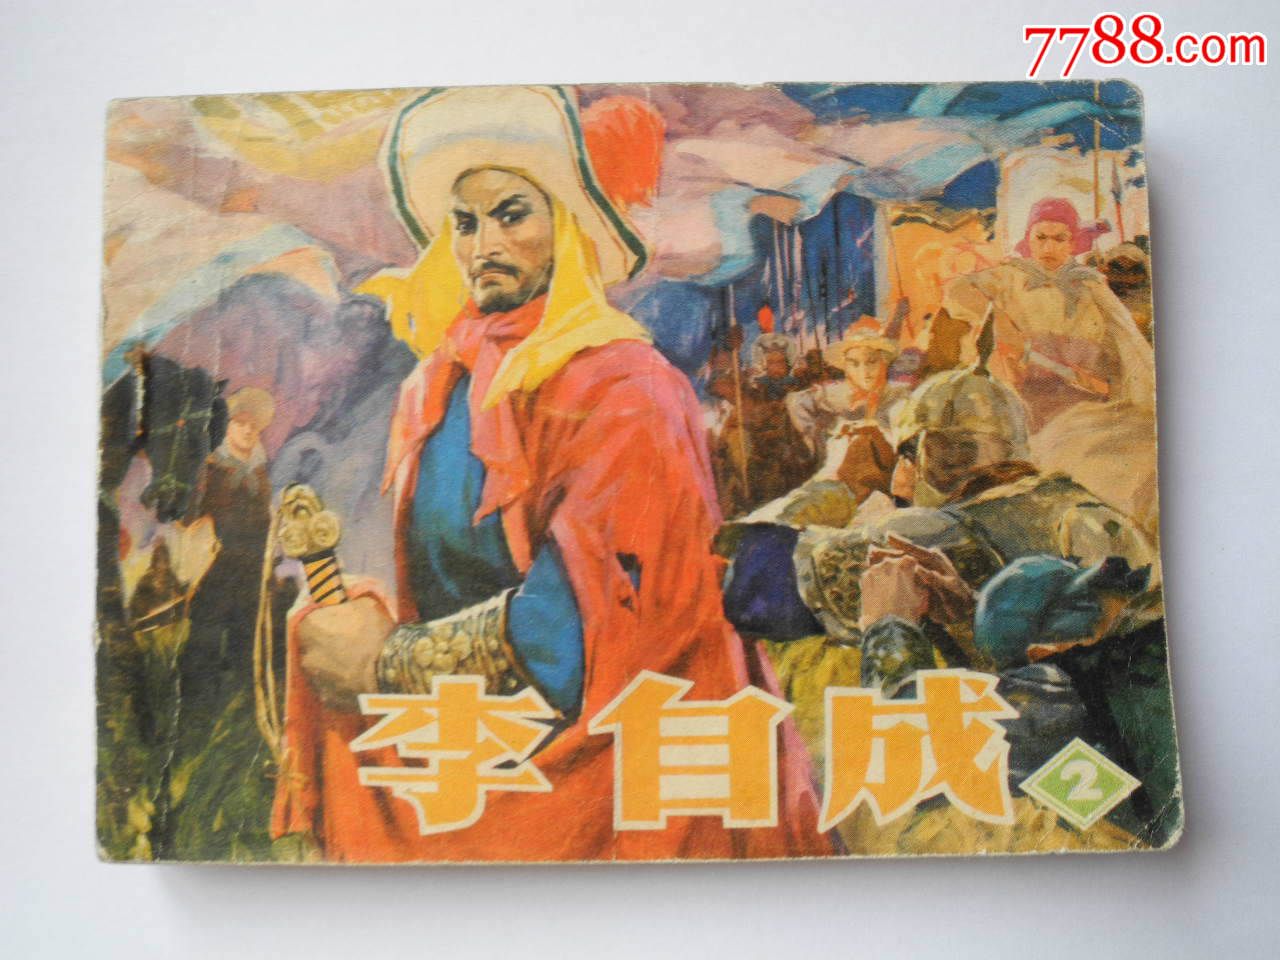 李自成,连环画/小人书,七十年代(20世纪),绘画版连环画,64开,古典题材